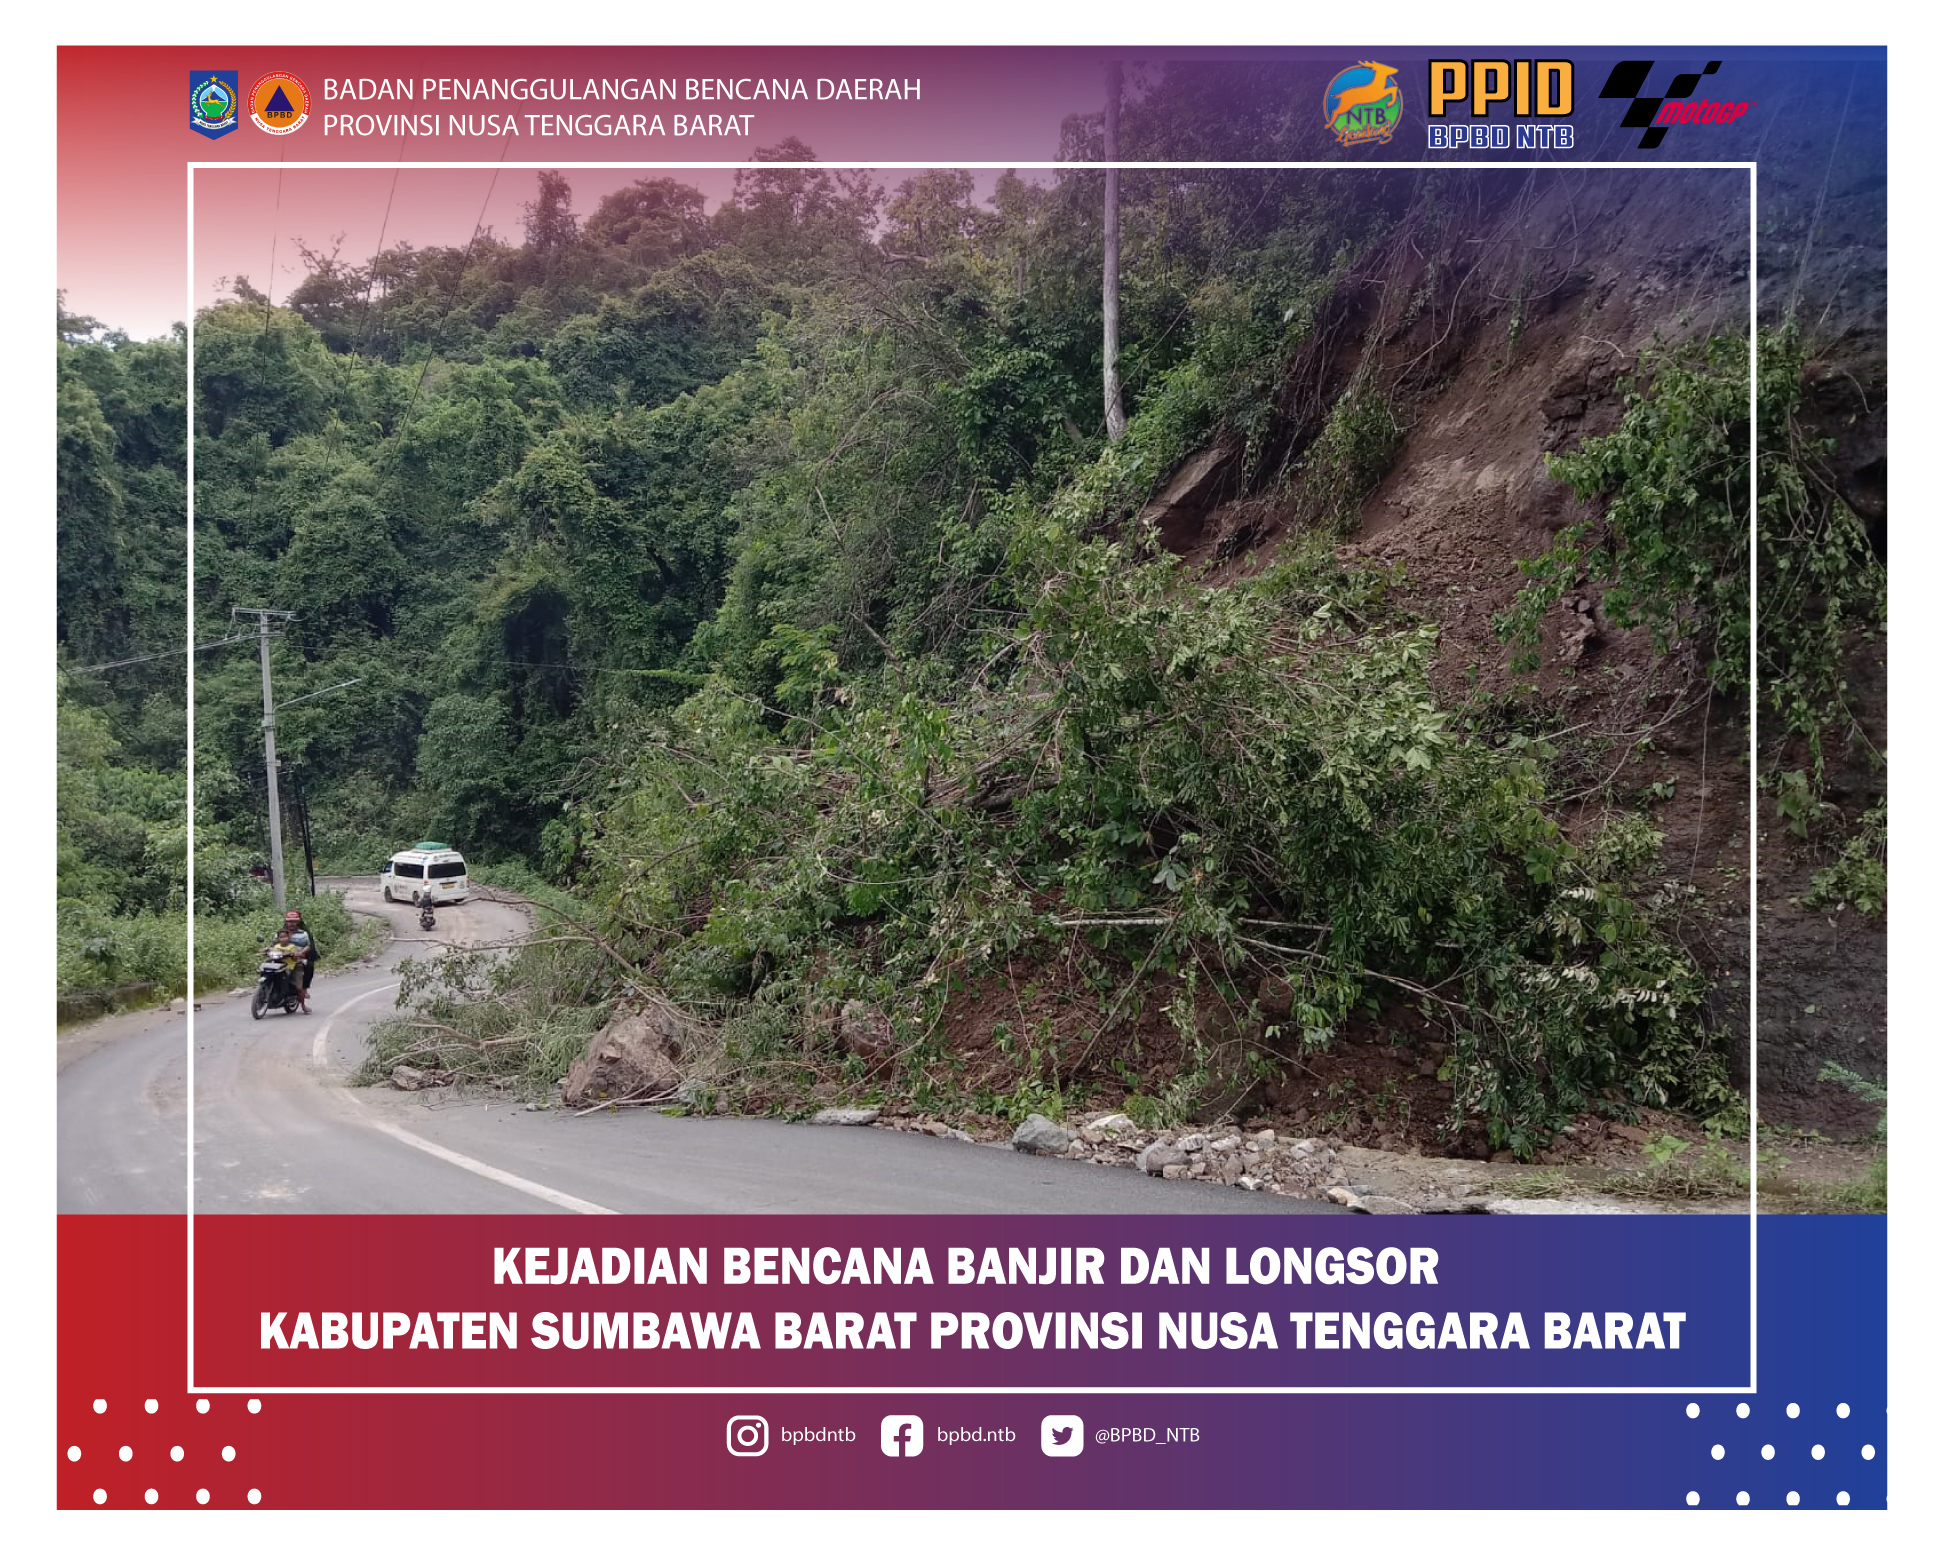 Laporan Kejadian Bencana Alam Banjir dan Longsor Kabupaten Sumbawa Barat (Senin, 13 Desember 2021)